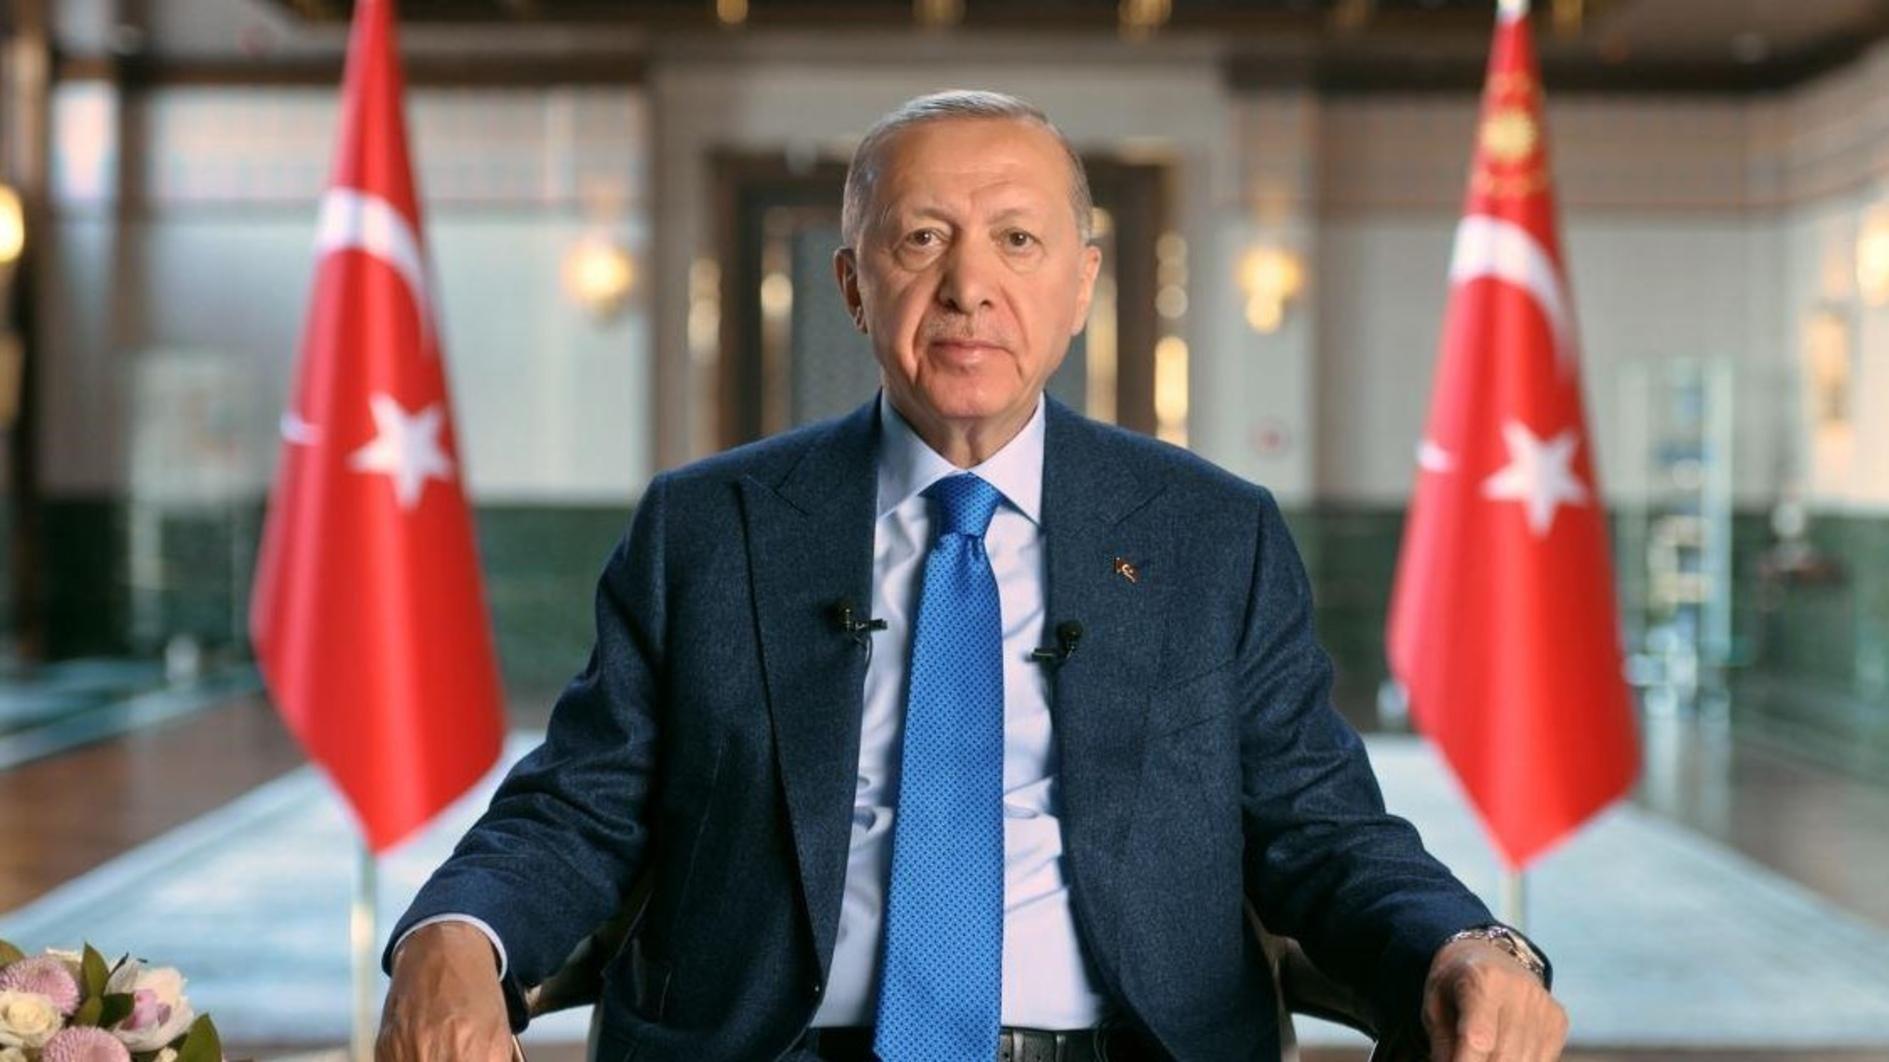 Erdoğan belooft economische focus tot de volgende verkiezingen